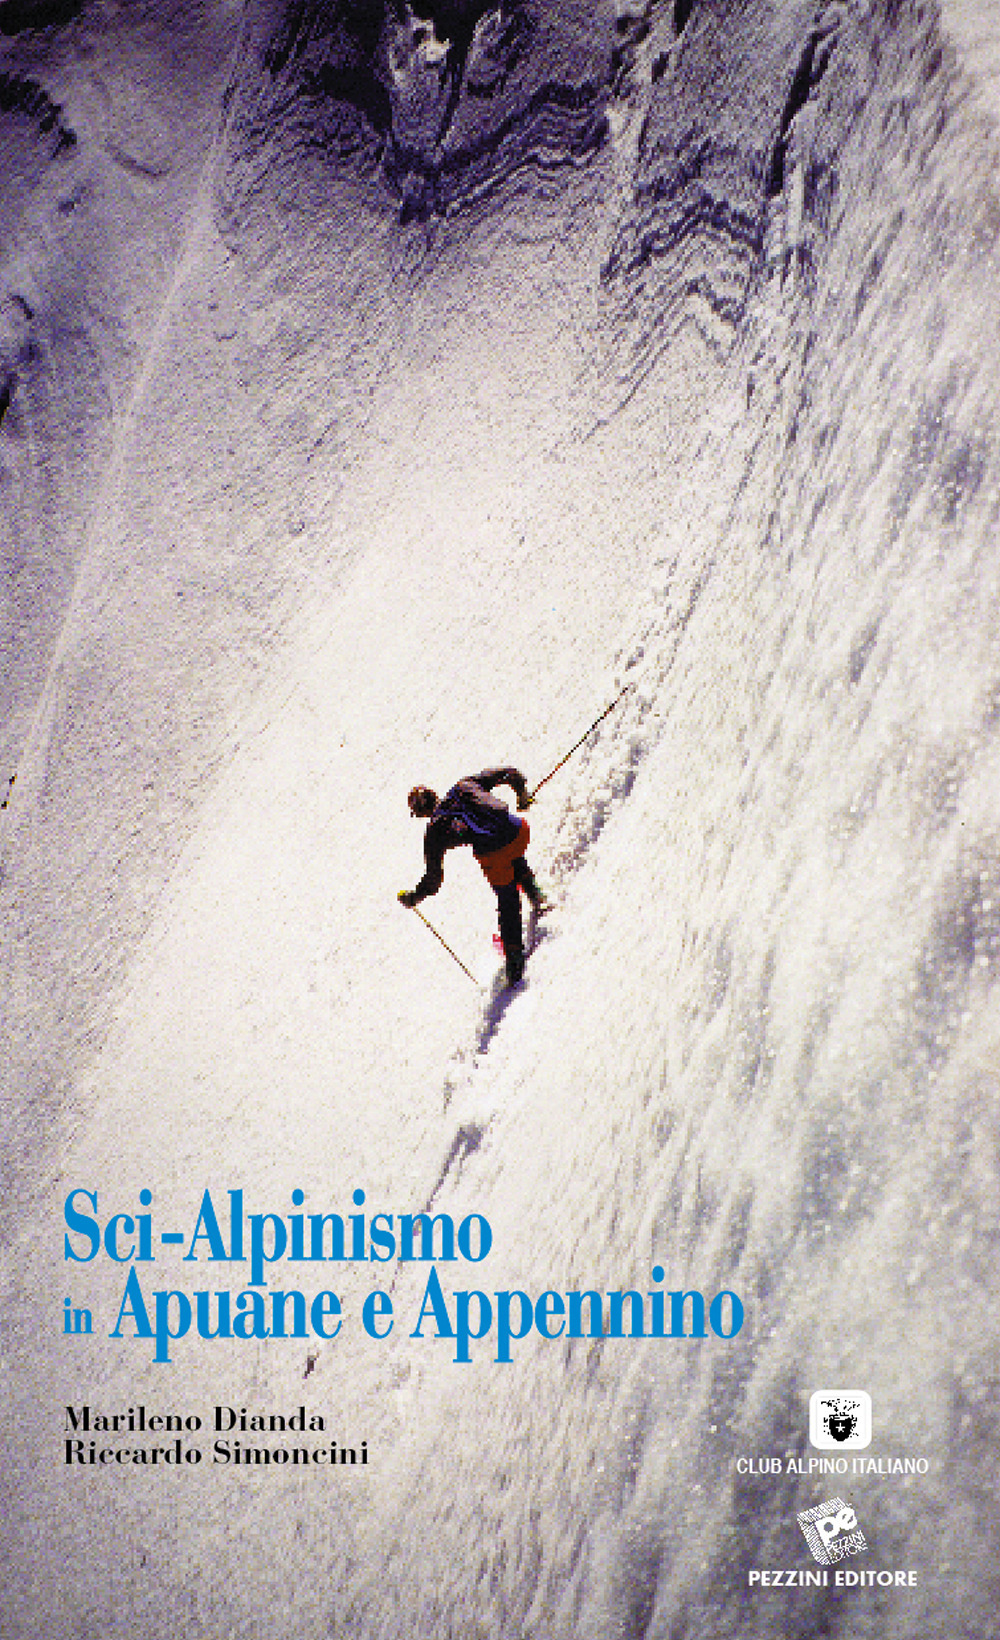 Sci-alpinismo in Apuane e Appennino